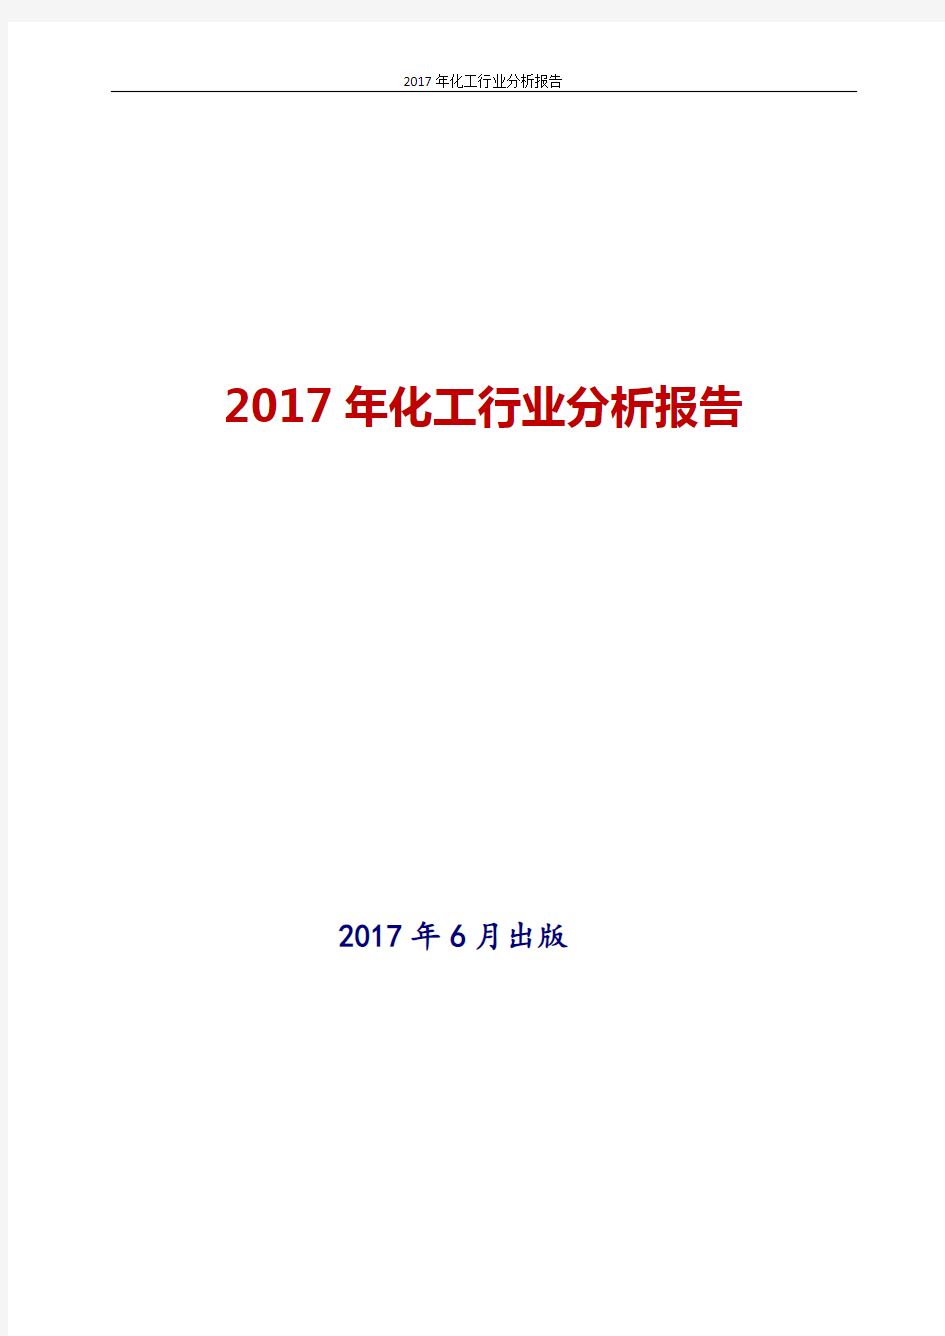 2017年中国化工行业分析报告